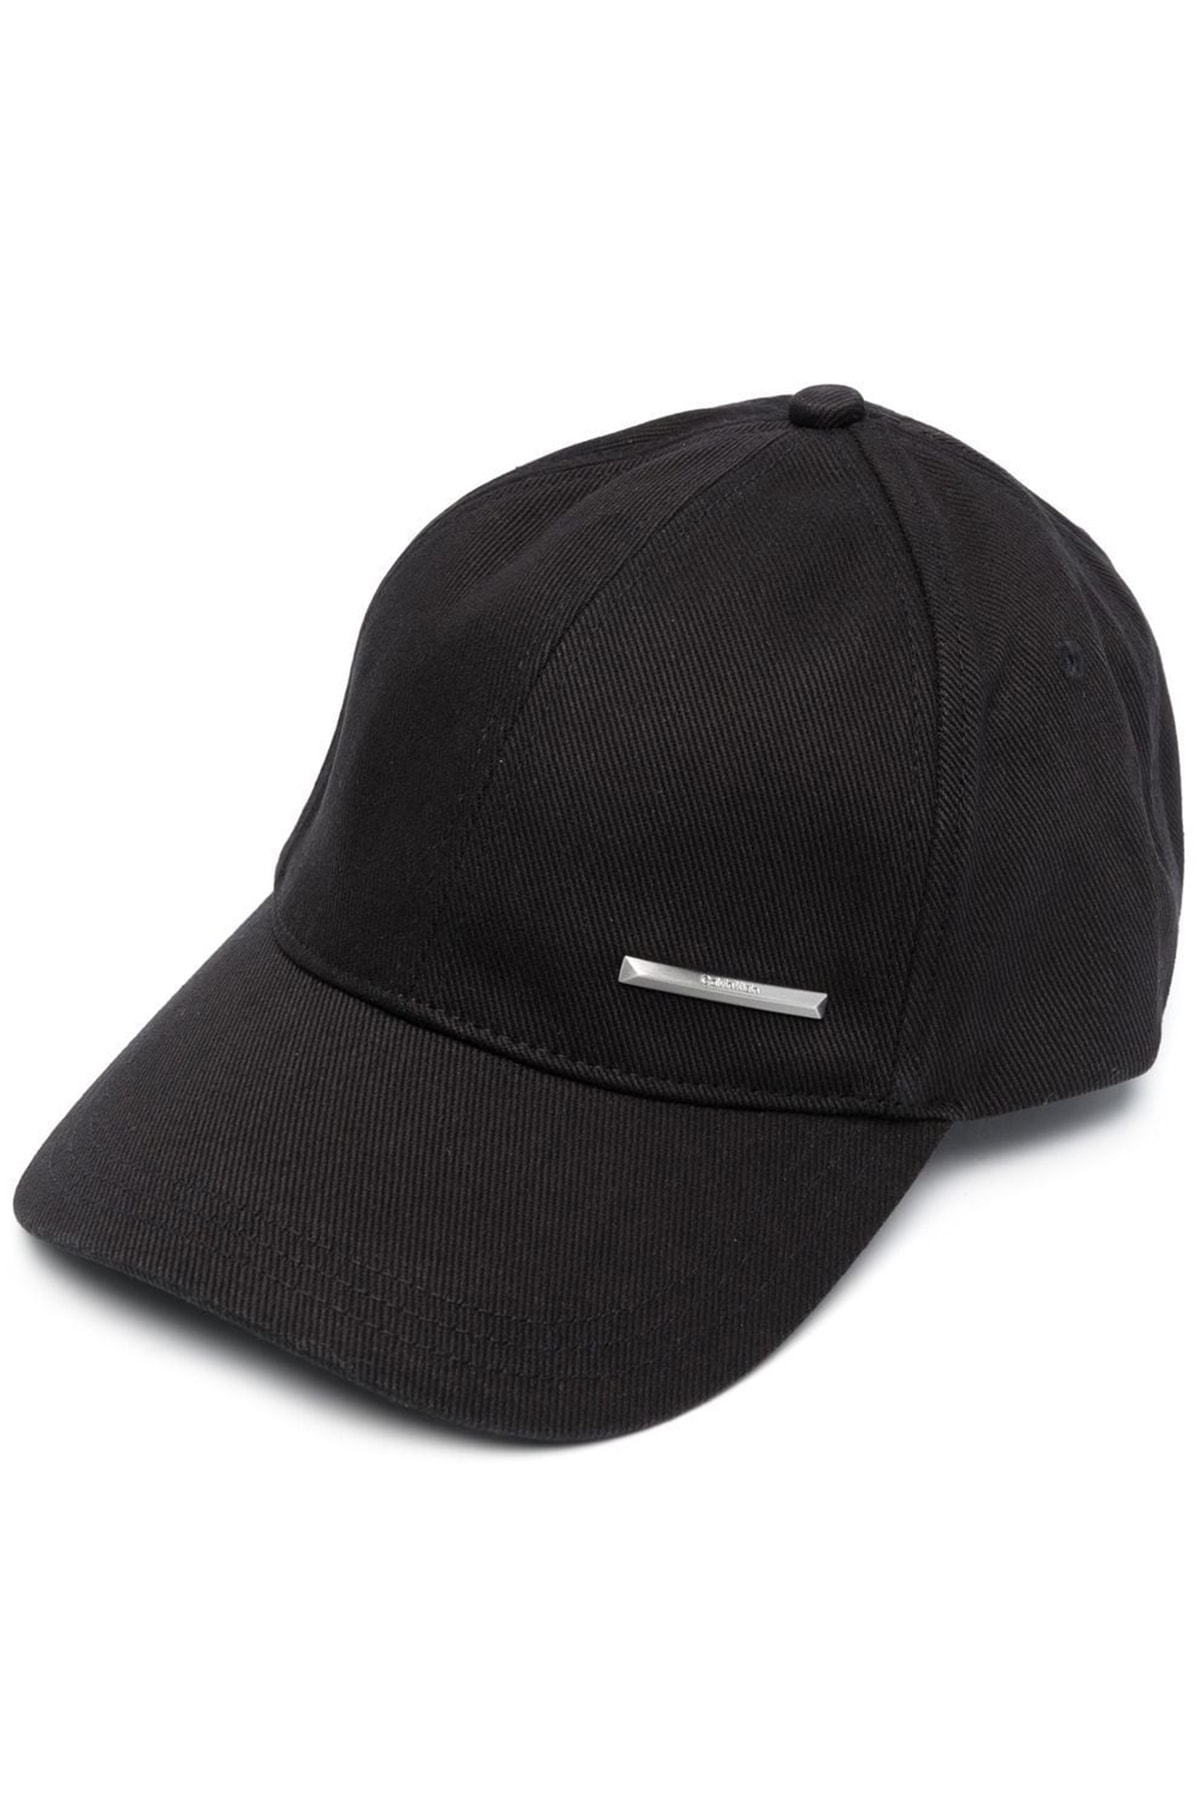 Calvin Klein Erkek Siyah Şapka ( Model Kodu : K50k509931 )